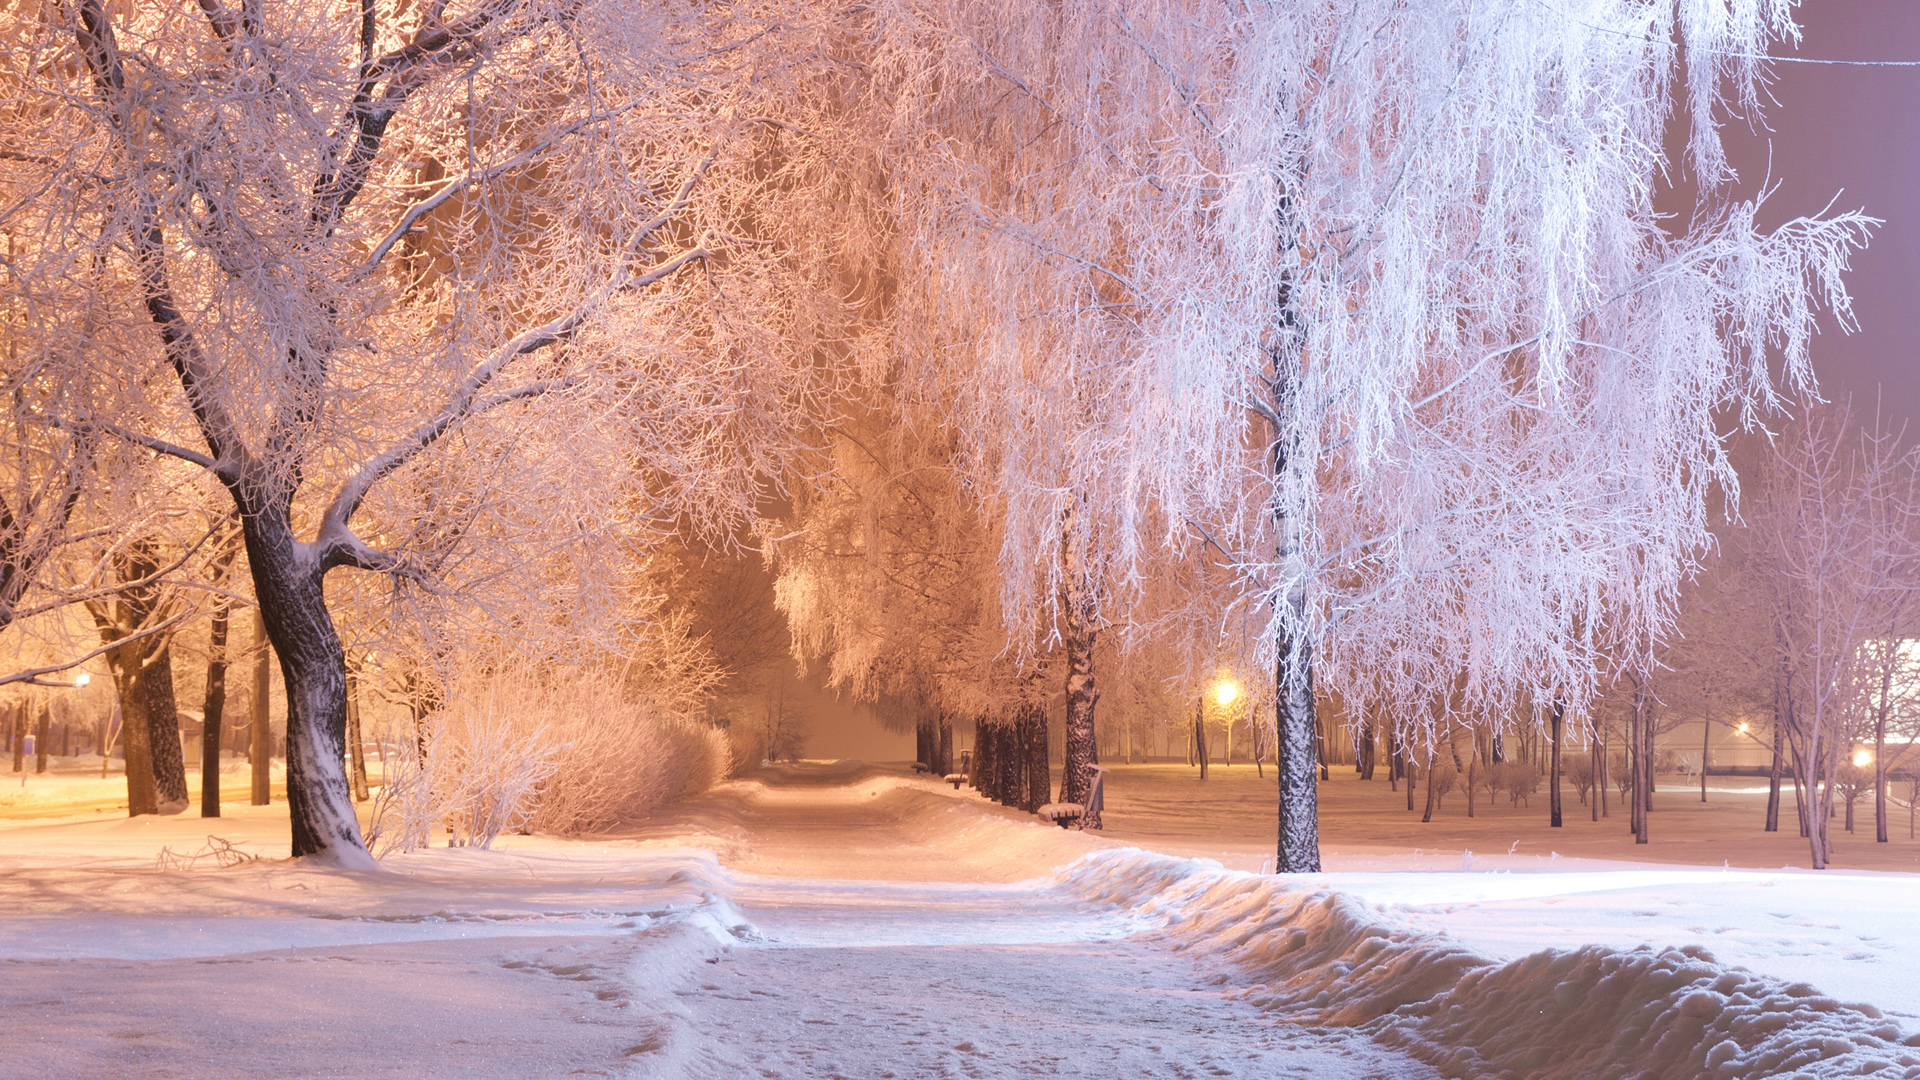 冬天,晚上,公园,小巷,雪,树木,灯光,路,风景桌面壁纸